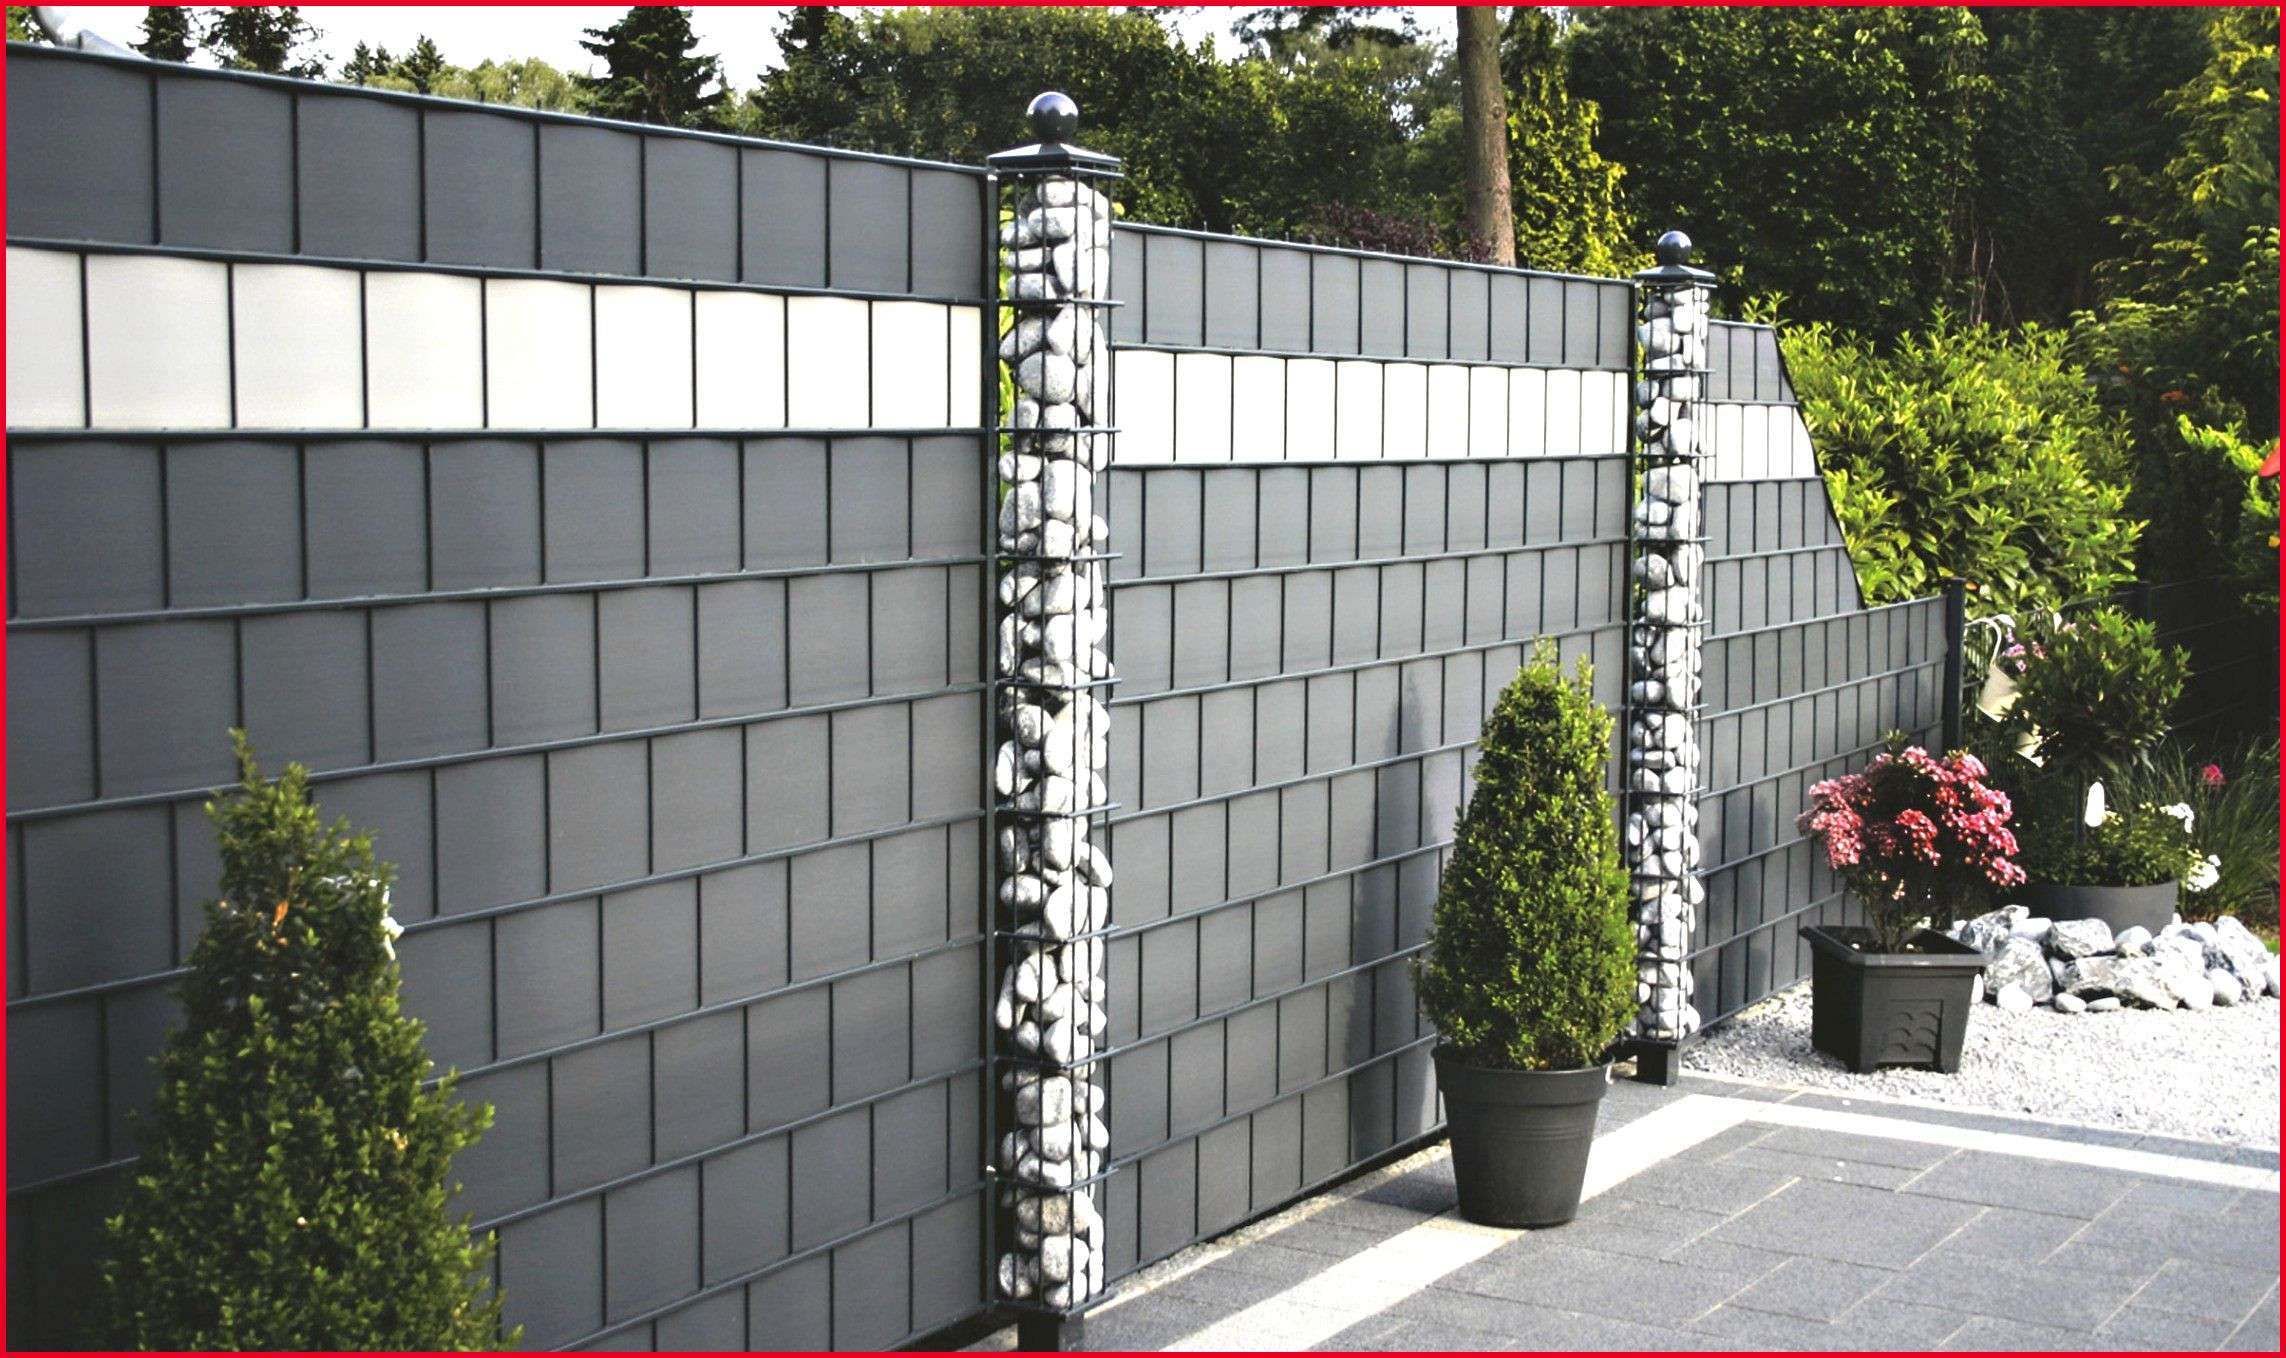 Modernen Garten Anlegen Luxus Sichtschutz Stein Beste Zaun Mit Steinen Garten Ideas Zaun